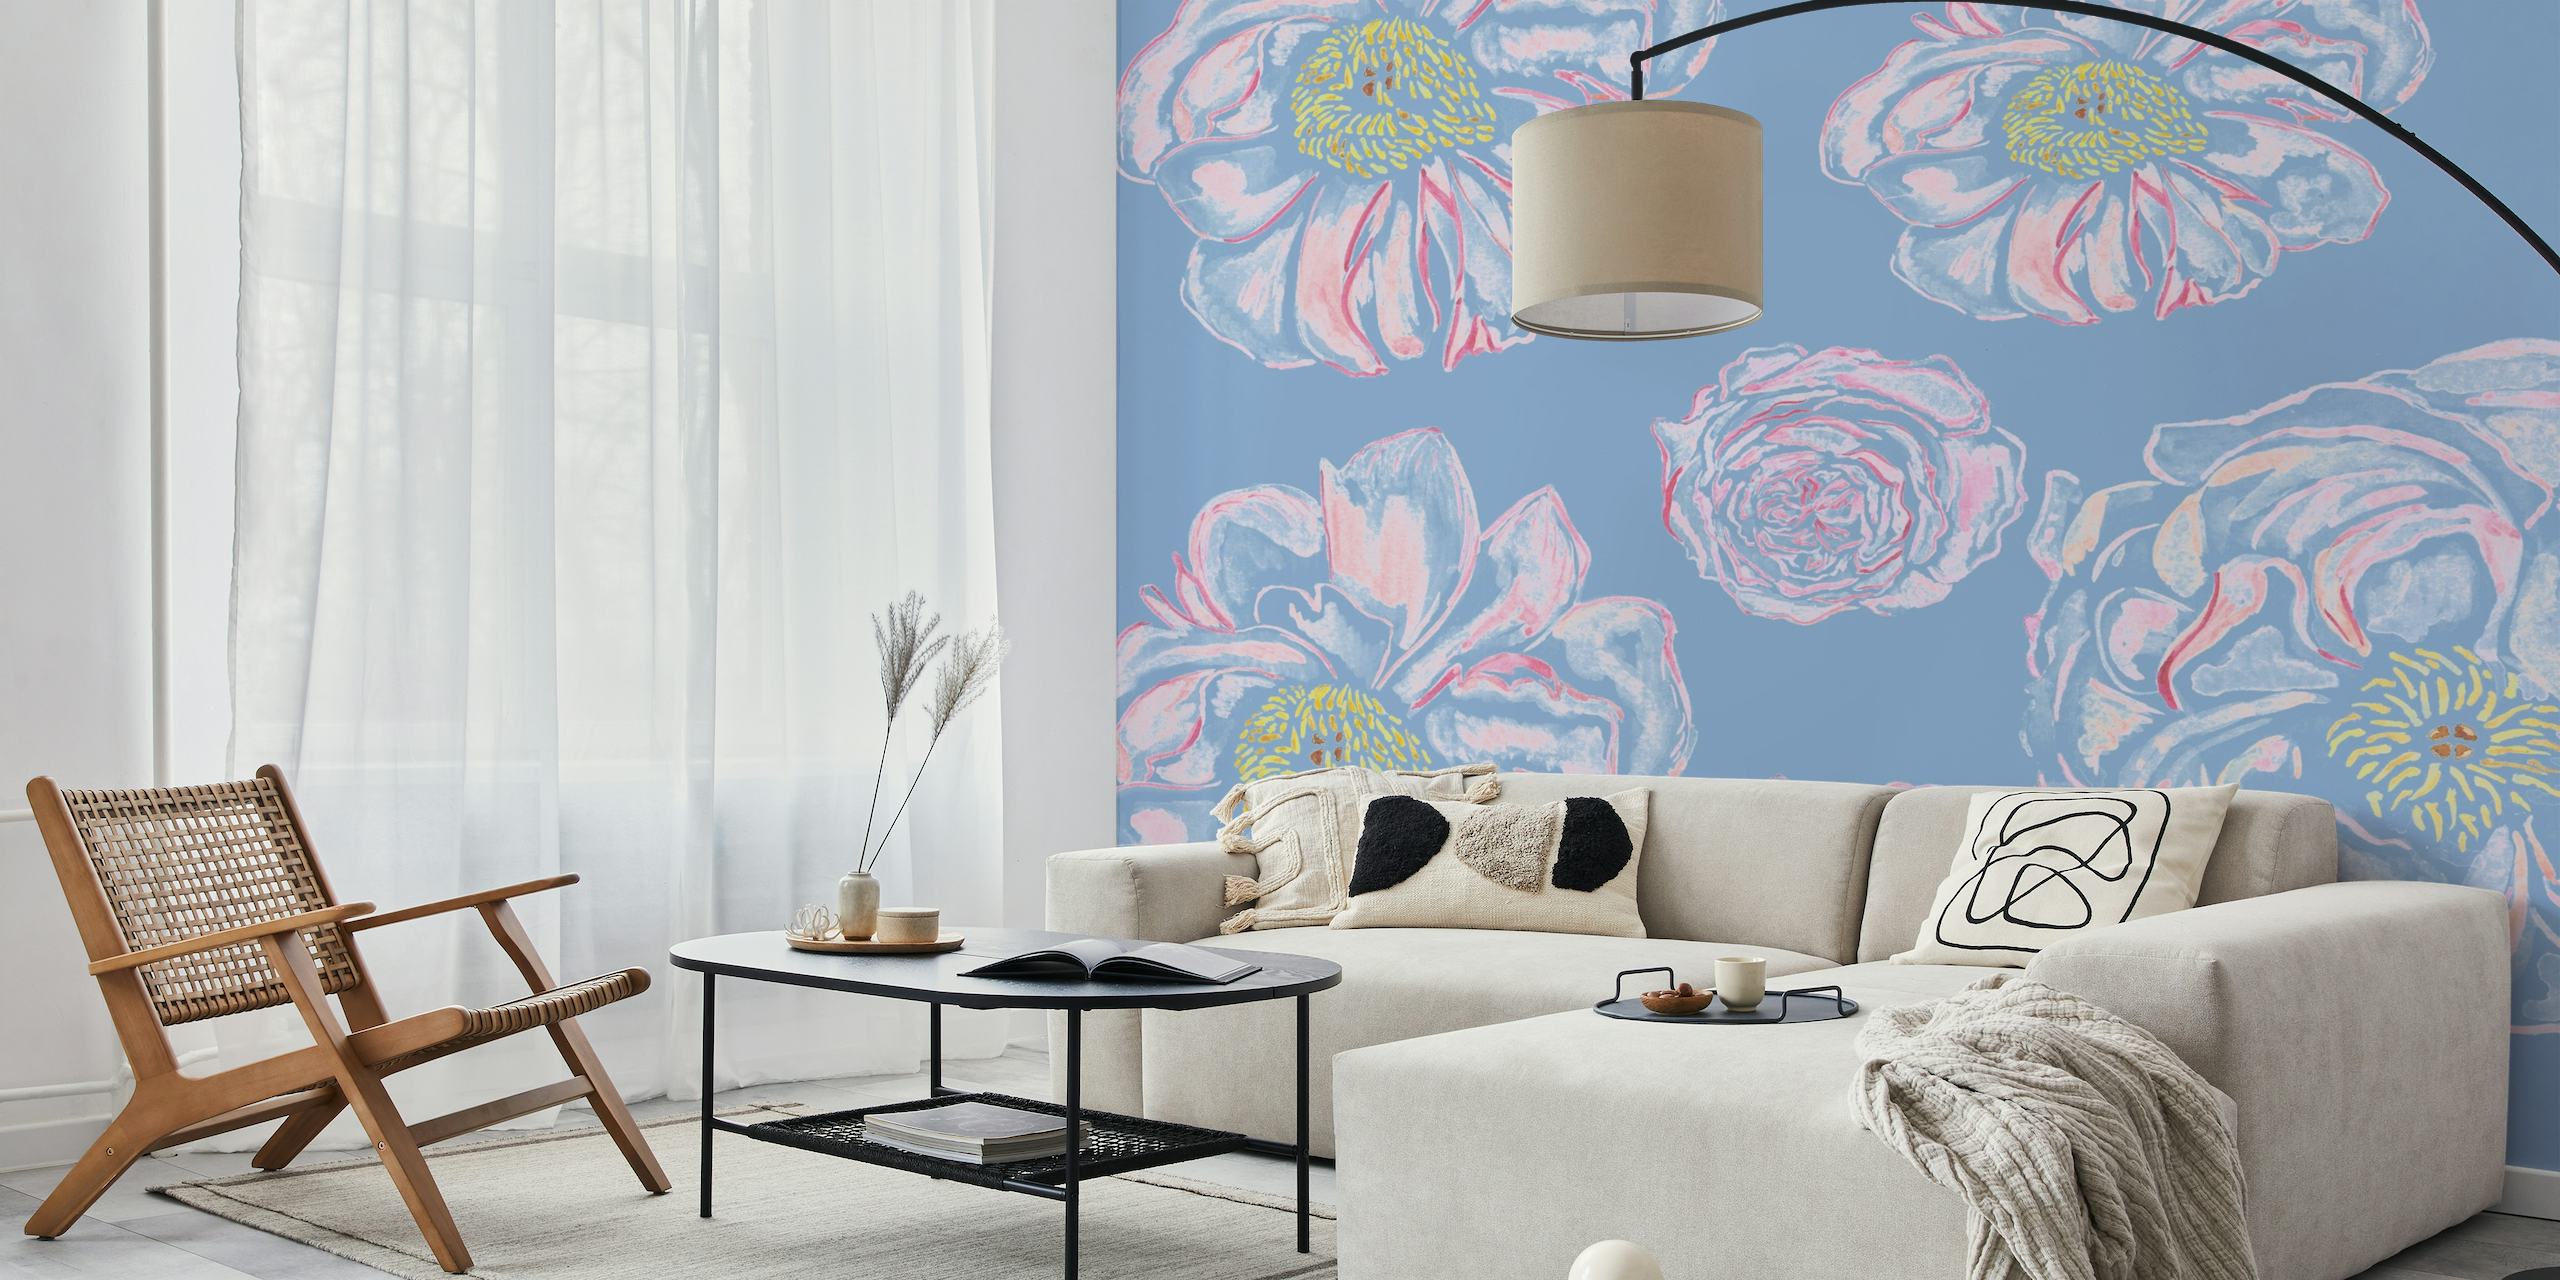 Stilizirano apstraktno cvijeće u nijansama plave, ružičaste i lila sa žutim detaljima na zidnom muralu